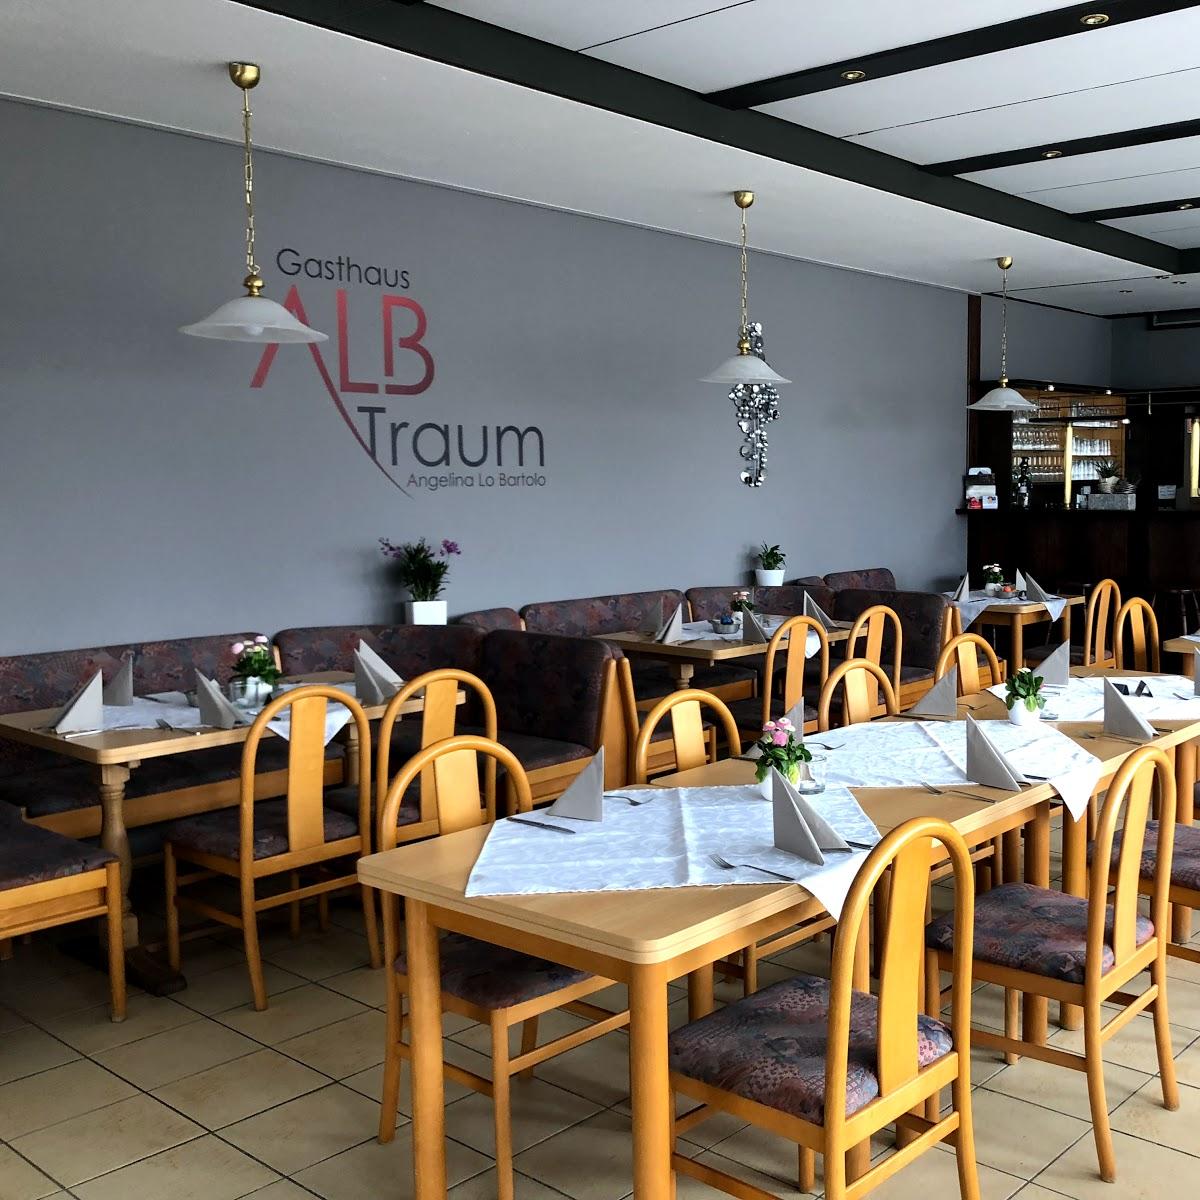 Restaurant "Gasthaus ALB Traum" in  Albstadt